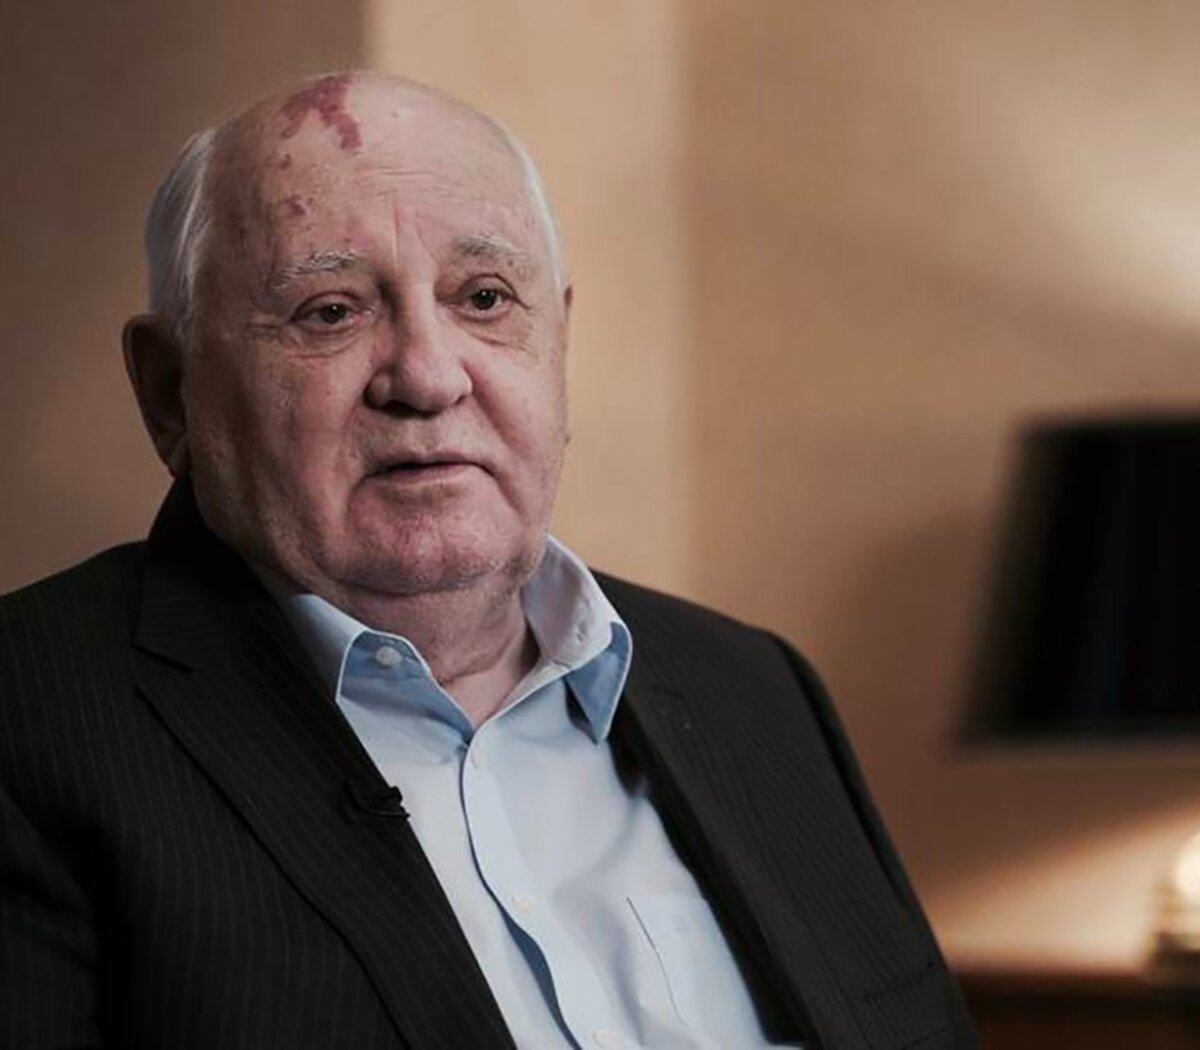 Murió en Rusia Mijaíl Gorbachov, el último presidente de la Unión Soviética  | Tenía 91 años y sufría problemas renales; será enterrado en Moscú junto a  su esposa Raísa. | Página12